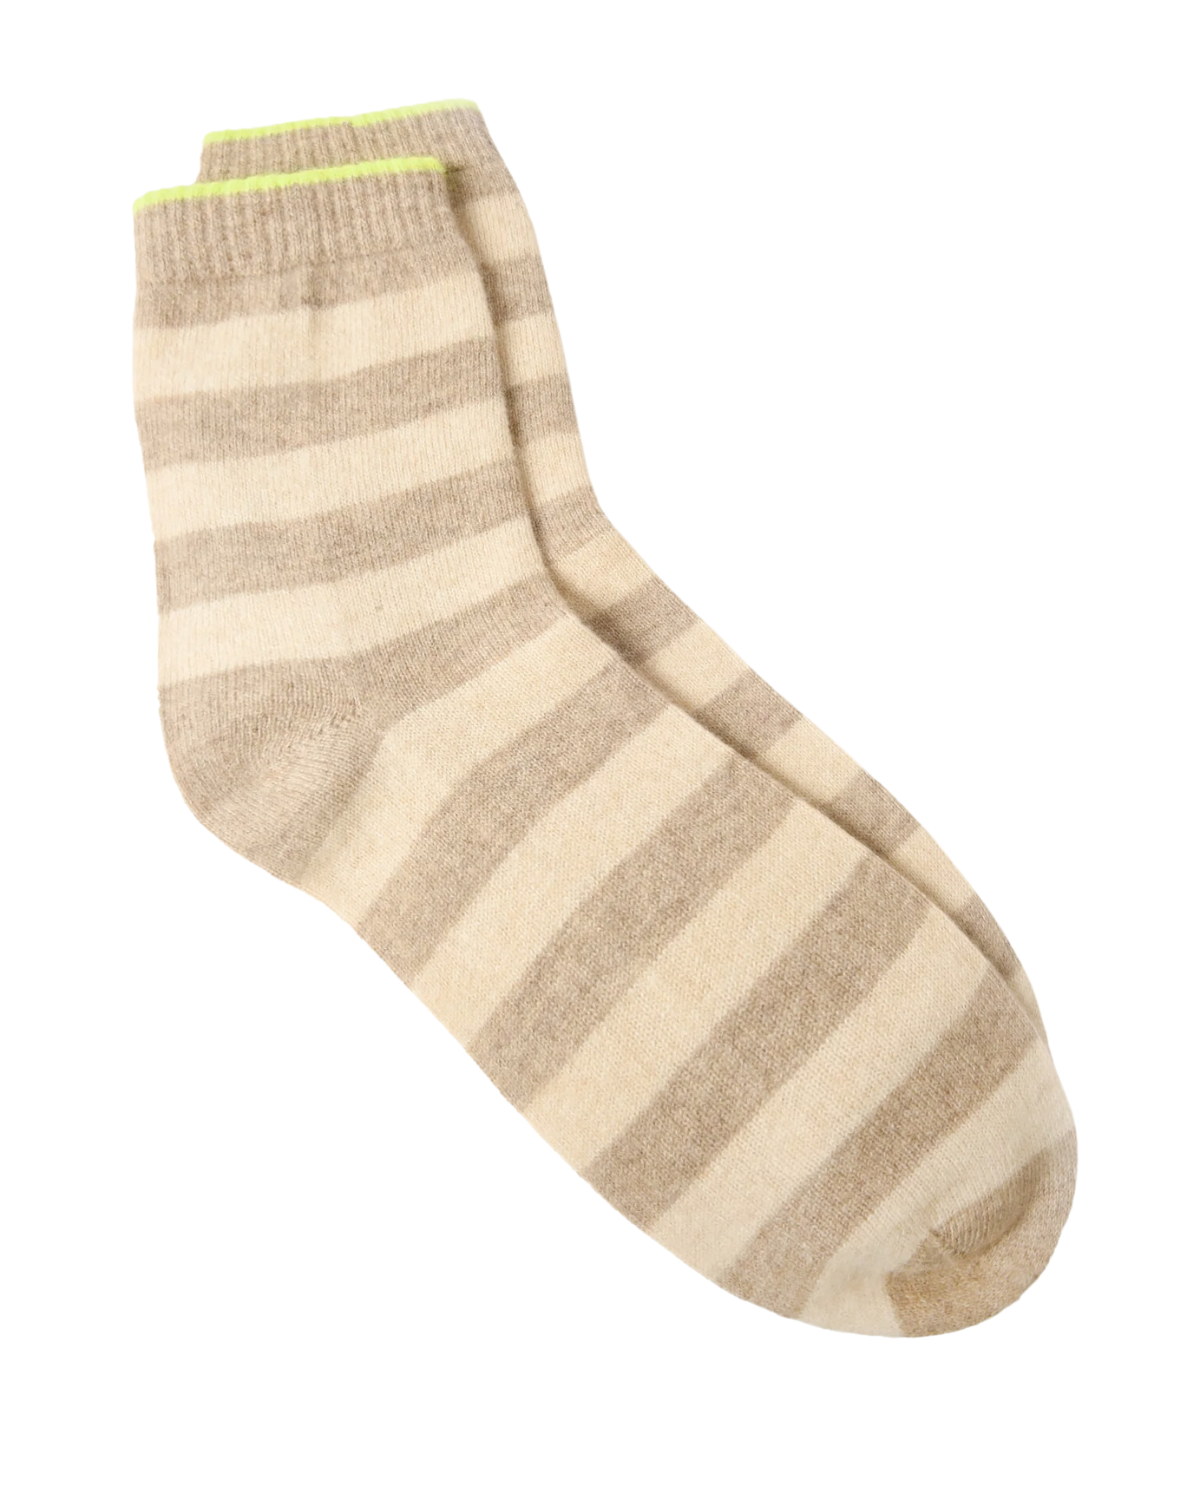 Stripe Socks (Brown/Oatmeal)